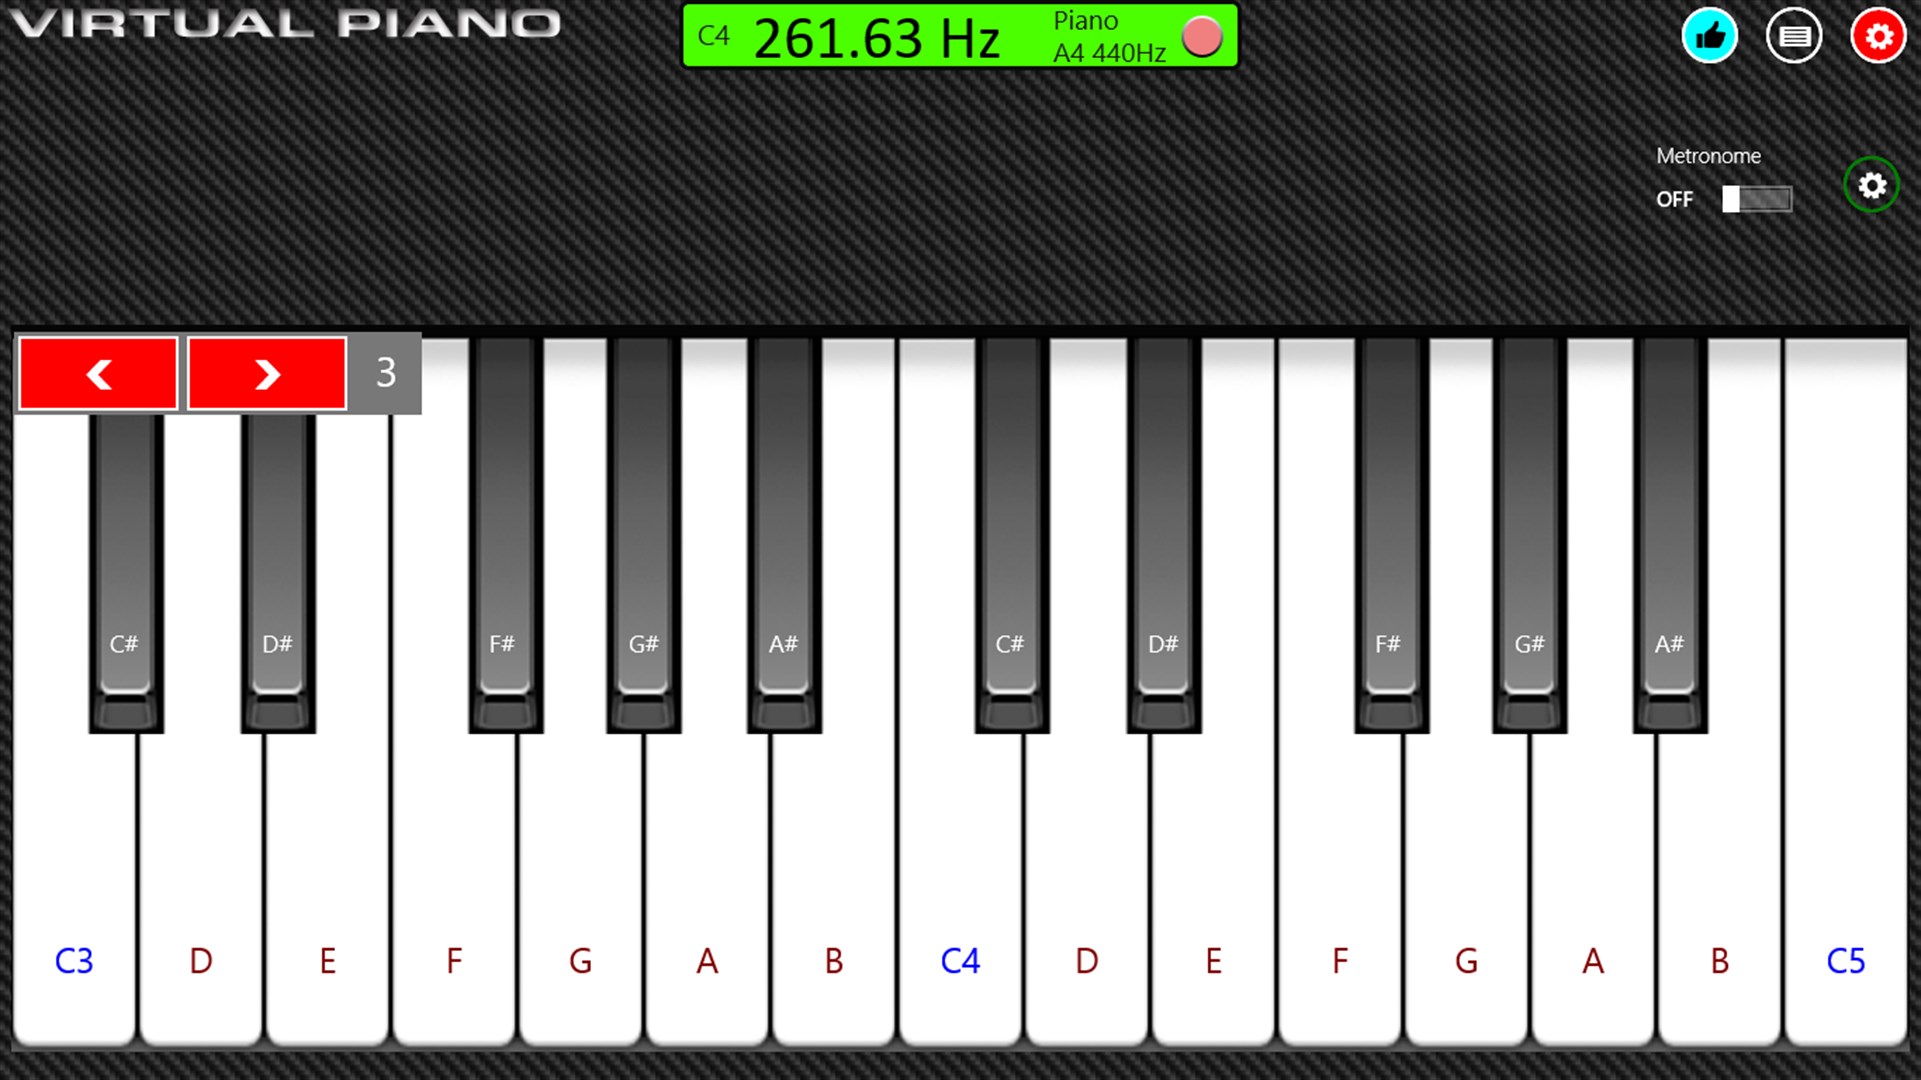 Online piano app, Virtual Piano